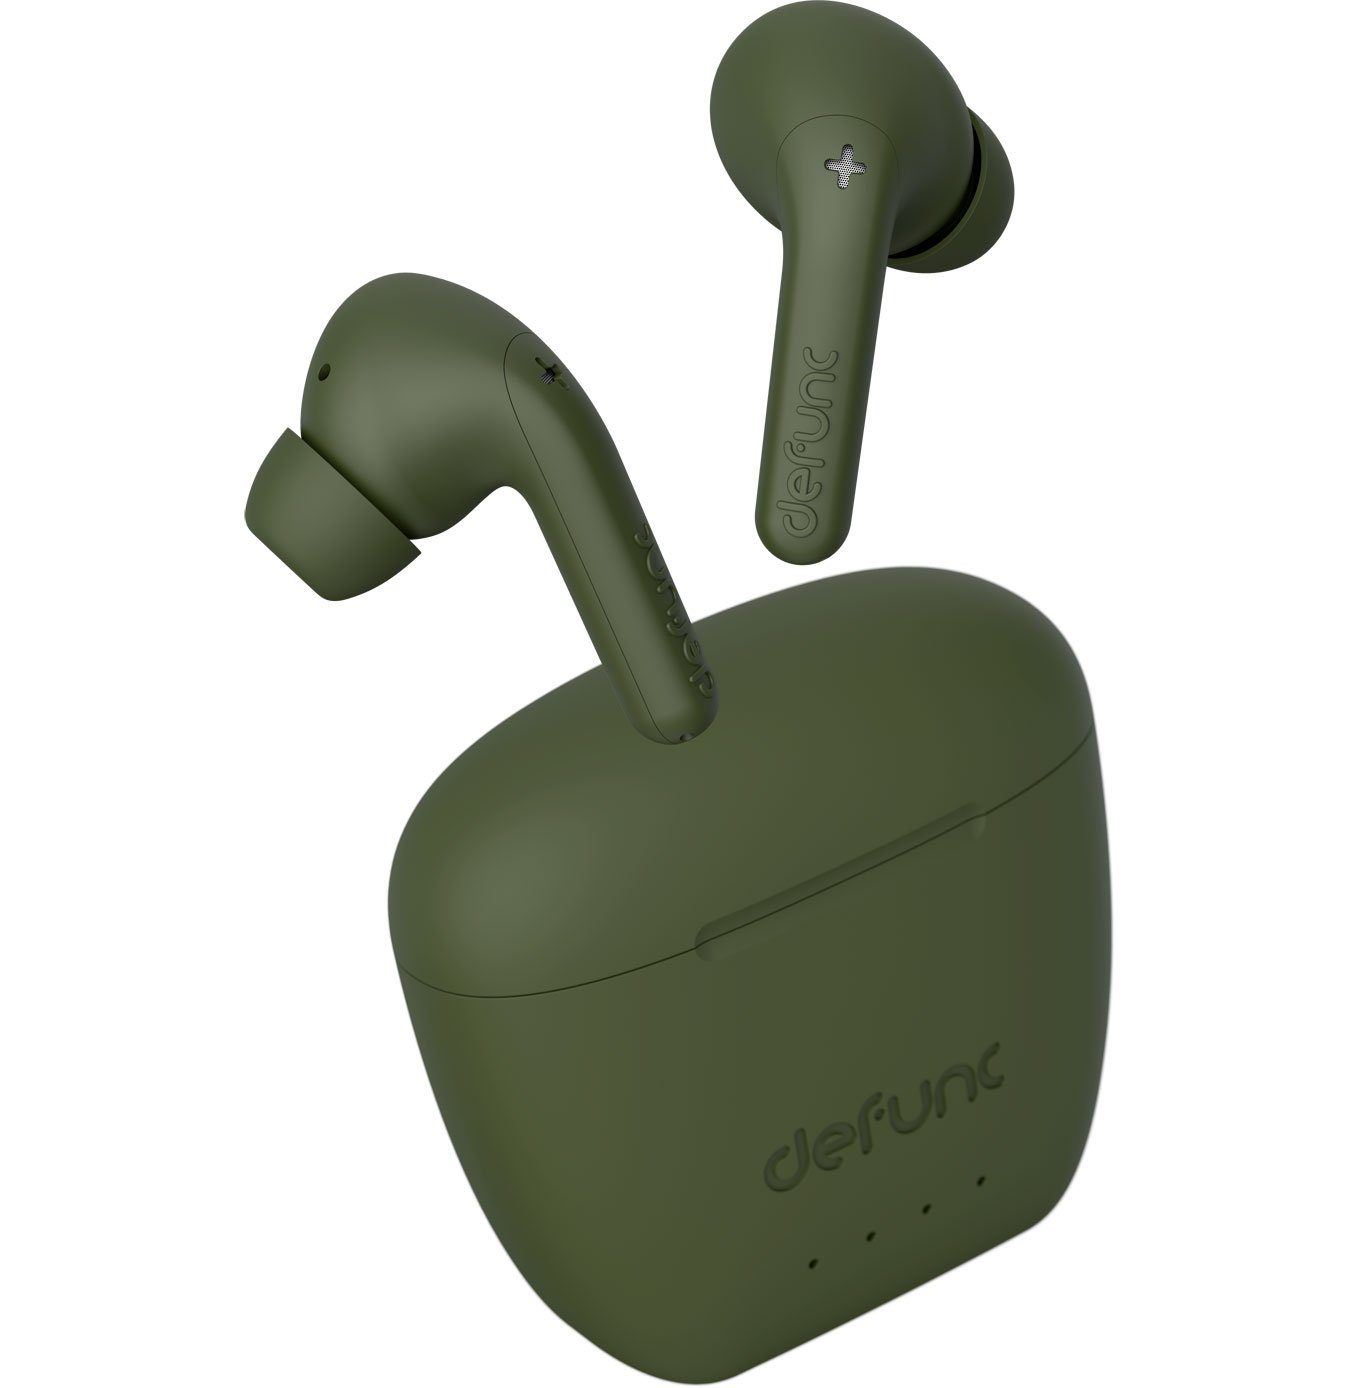 Defunc TRUE AUDIO InEar-Kopfhörer - Wireless In-Ear-Kopfhörer Grün Bluetooth wireless 